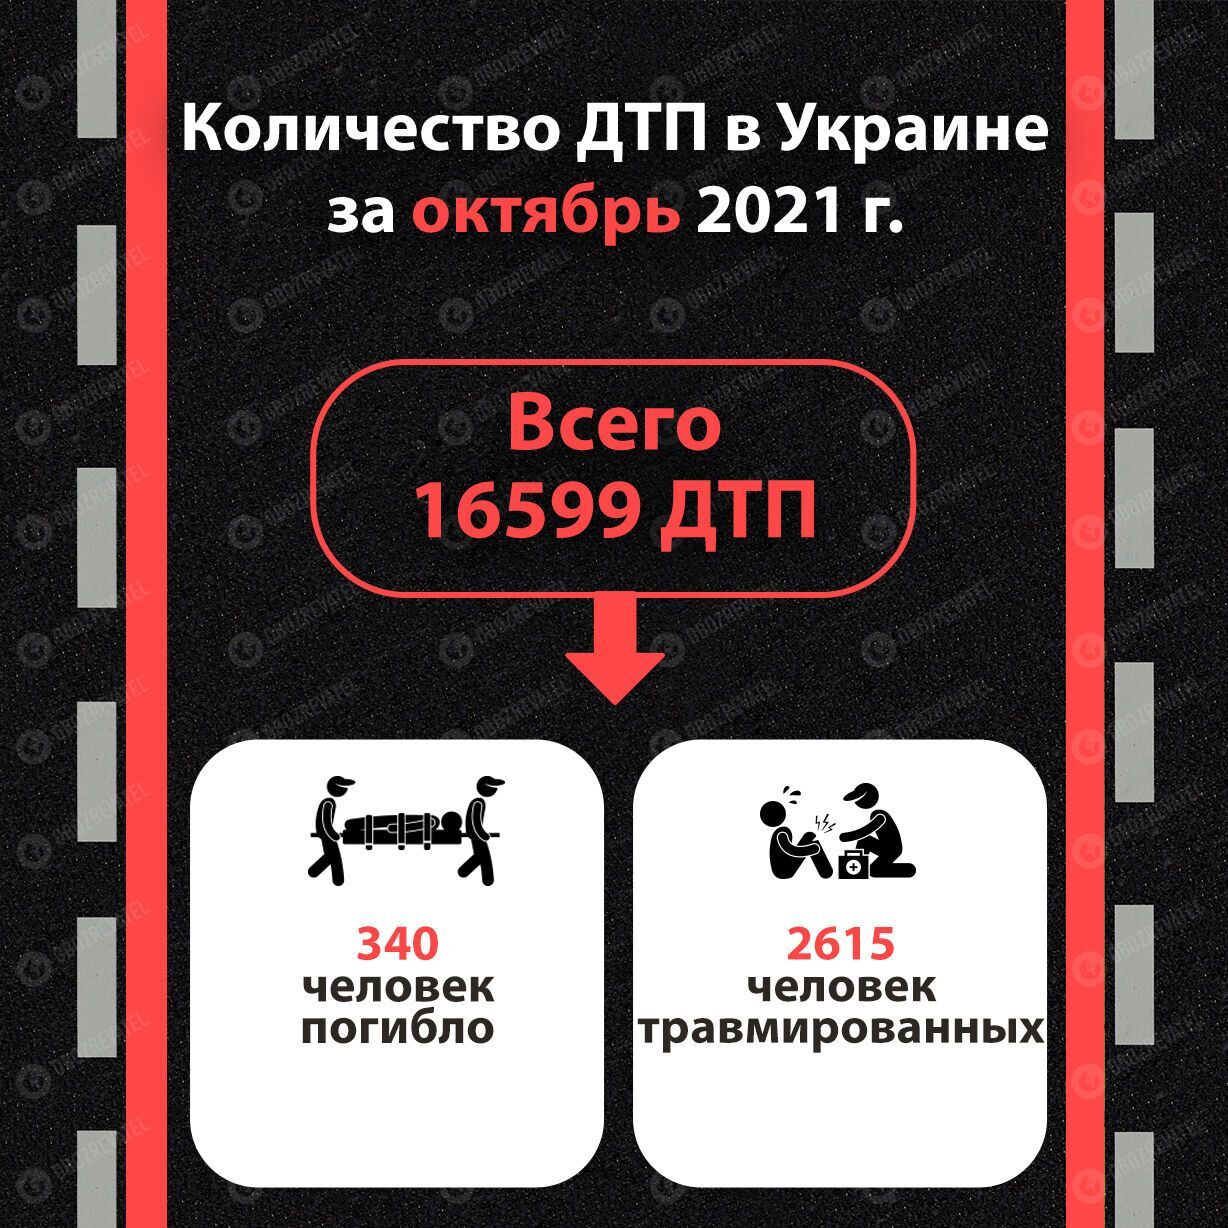 Статистика ДТП в Украине за октябрь